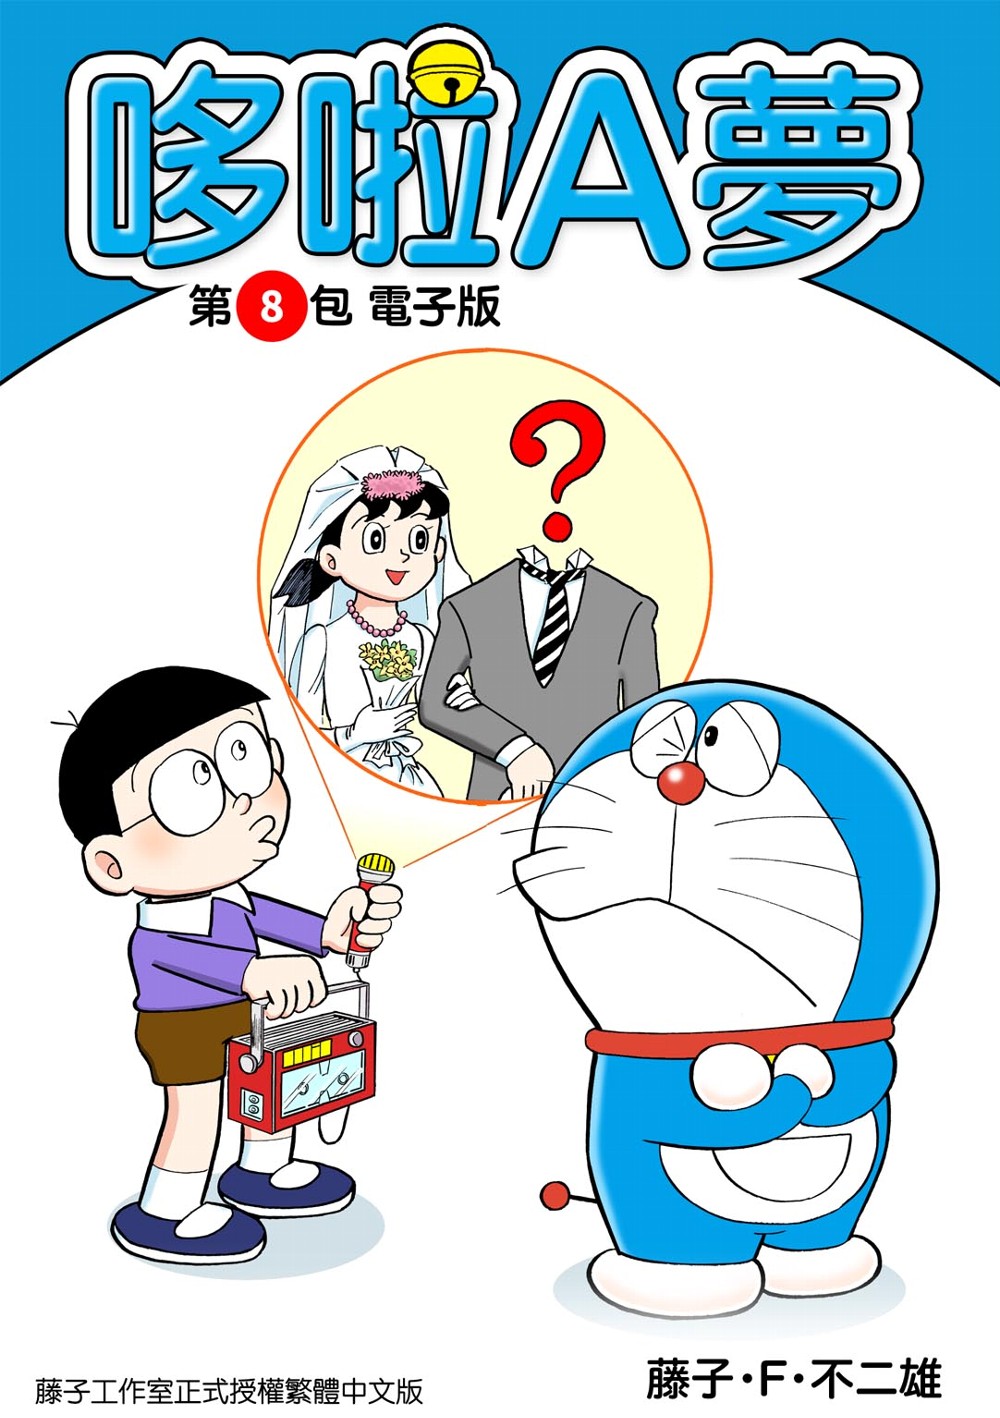 哆啦A夢 第8包 電子版 (電子書)